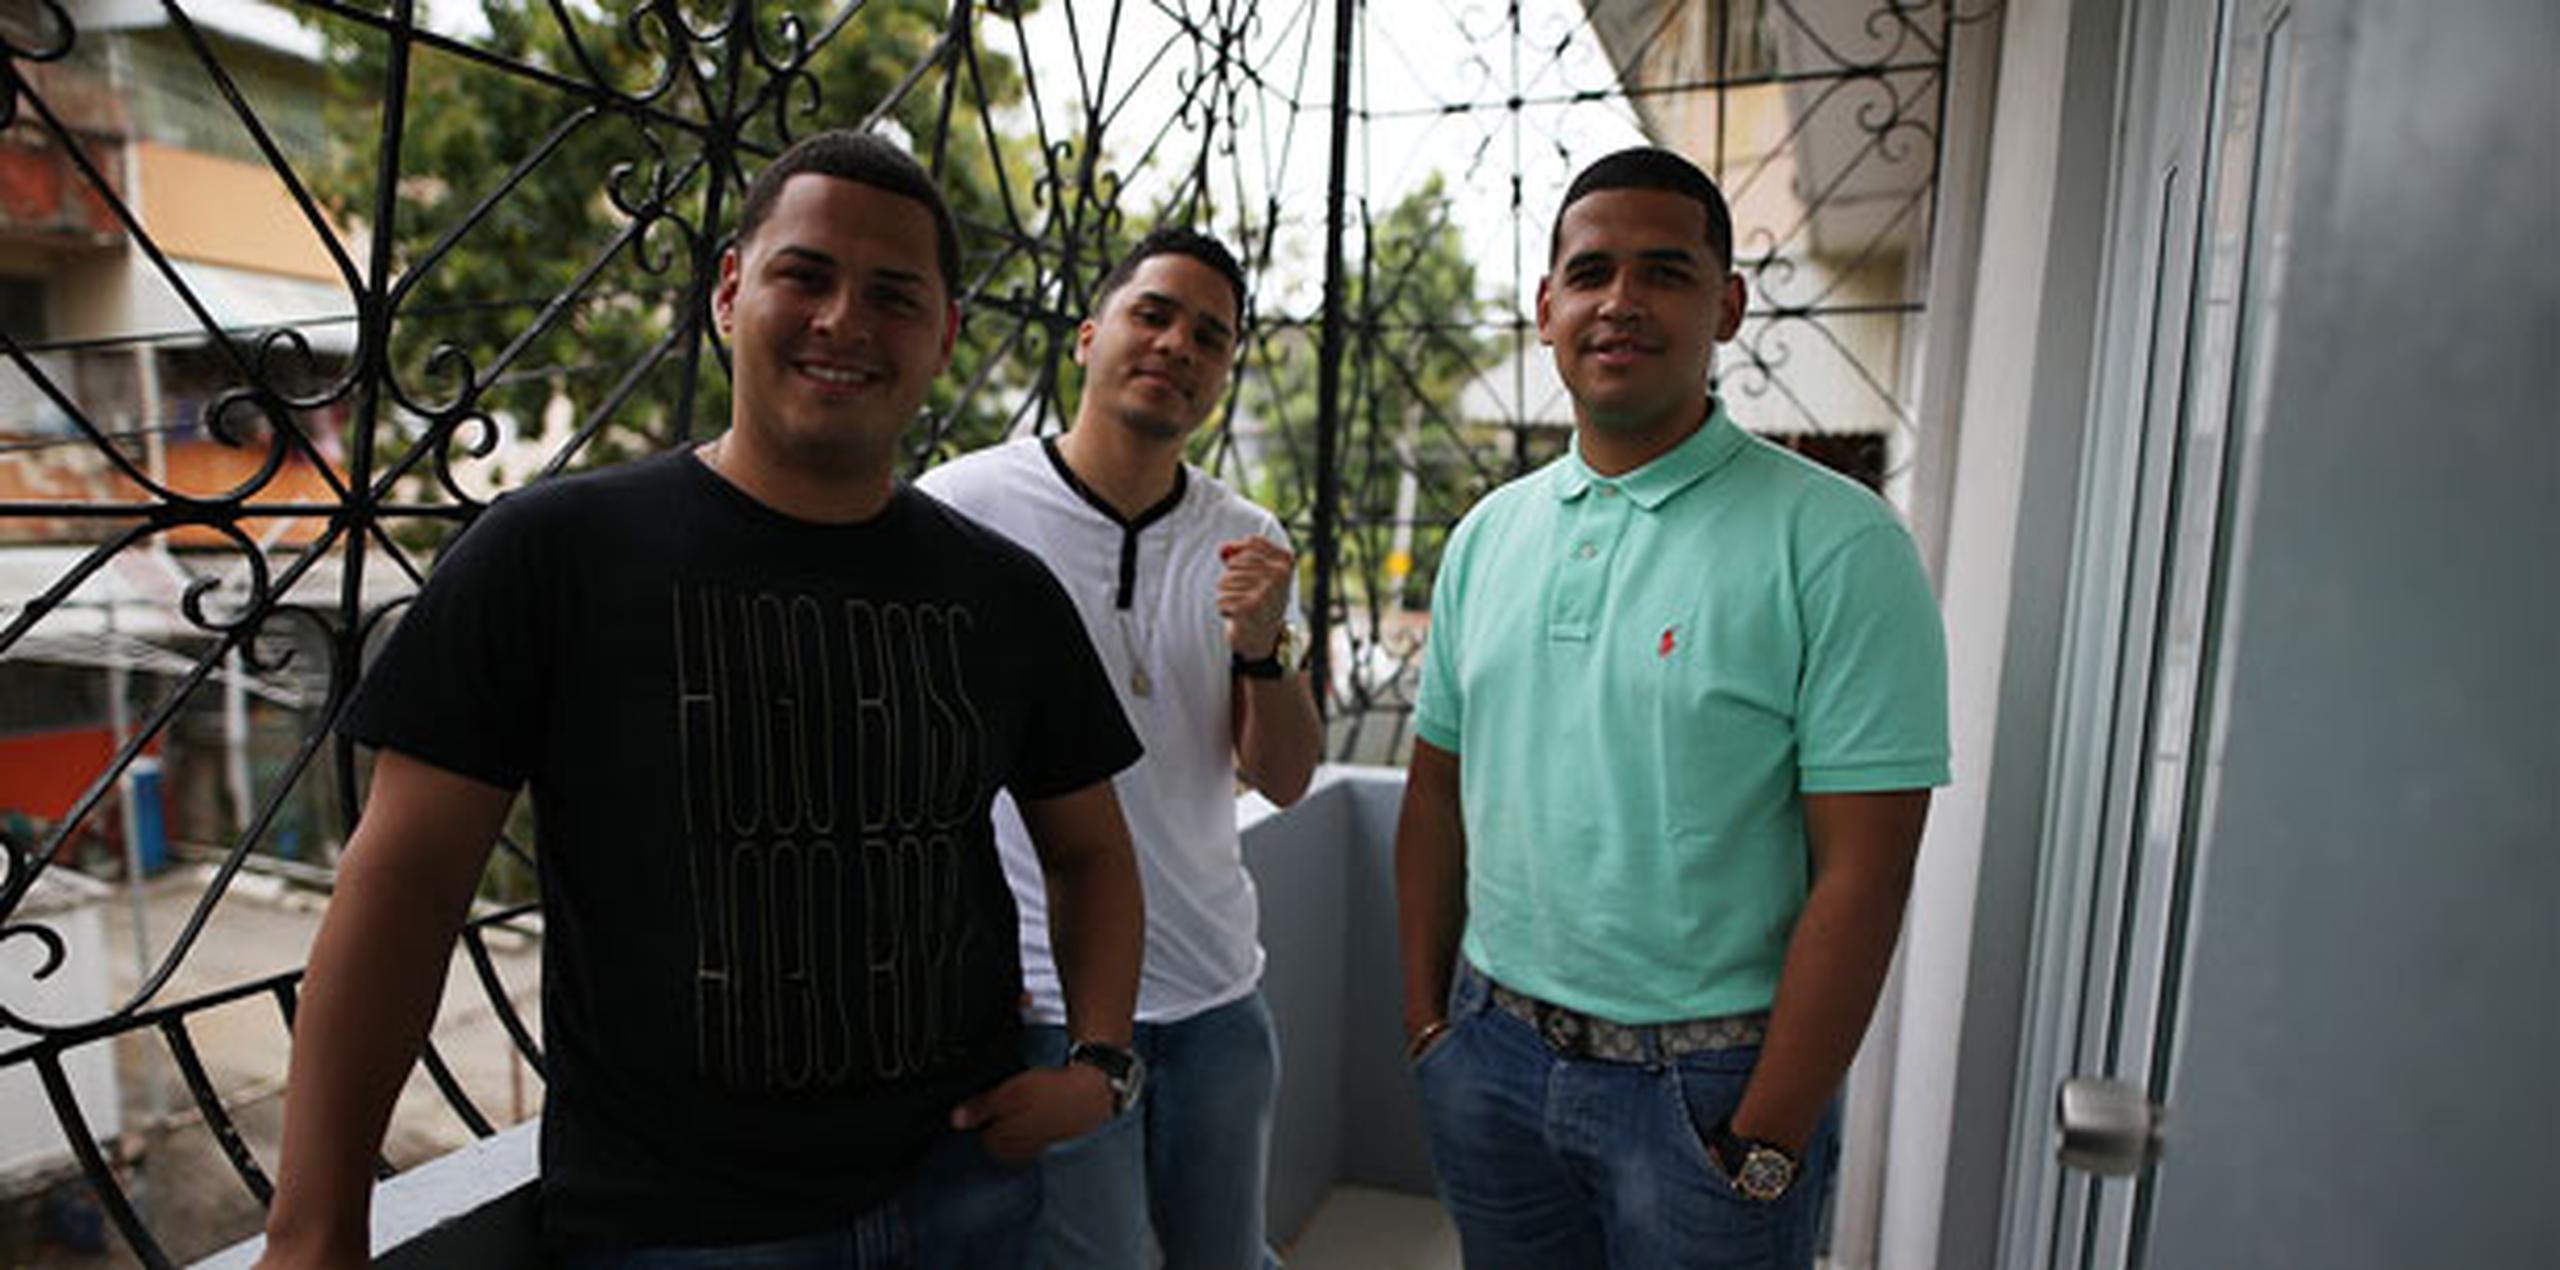 Llanos, su amigo Juhn Hernández y su hermano, Joshua Álvarez, son chicos que hacen la diferencia en Puerto Rico. (jose.candelaria@gfrmedia.com)